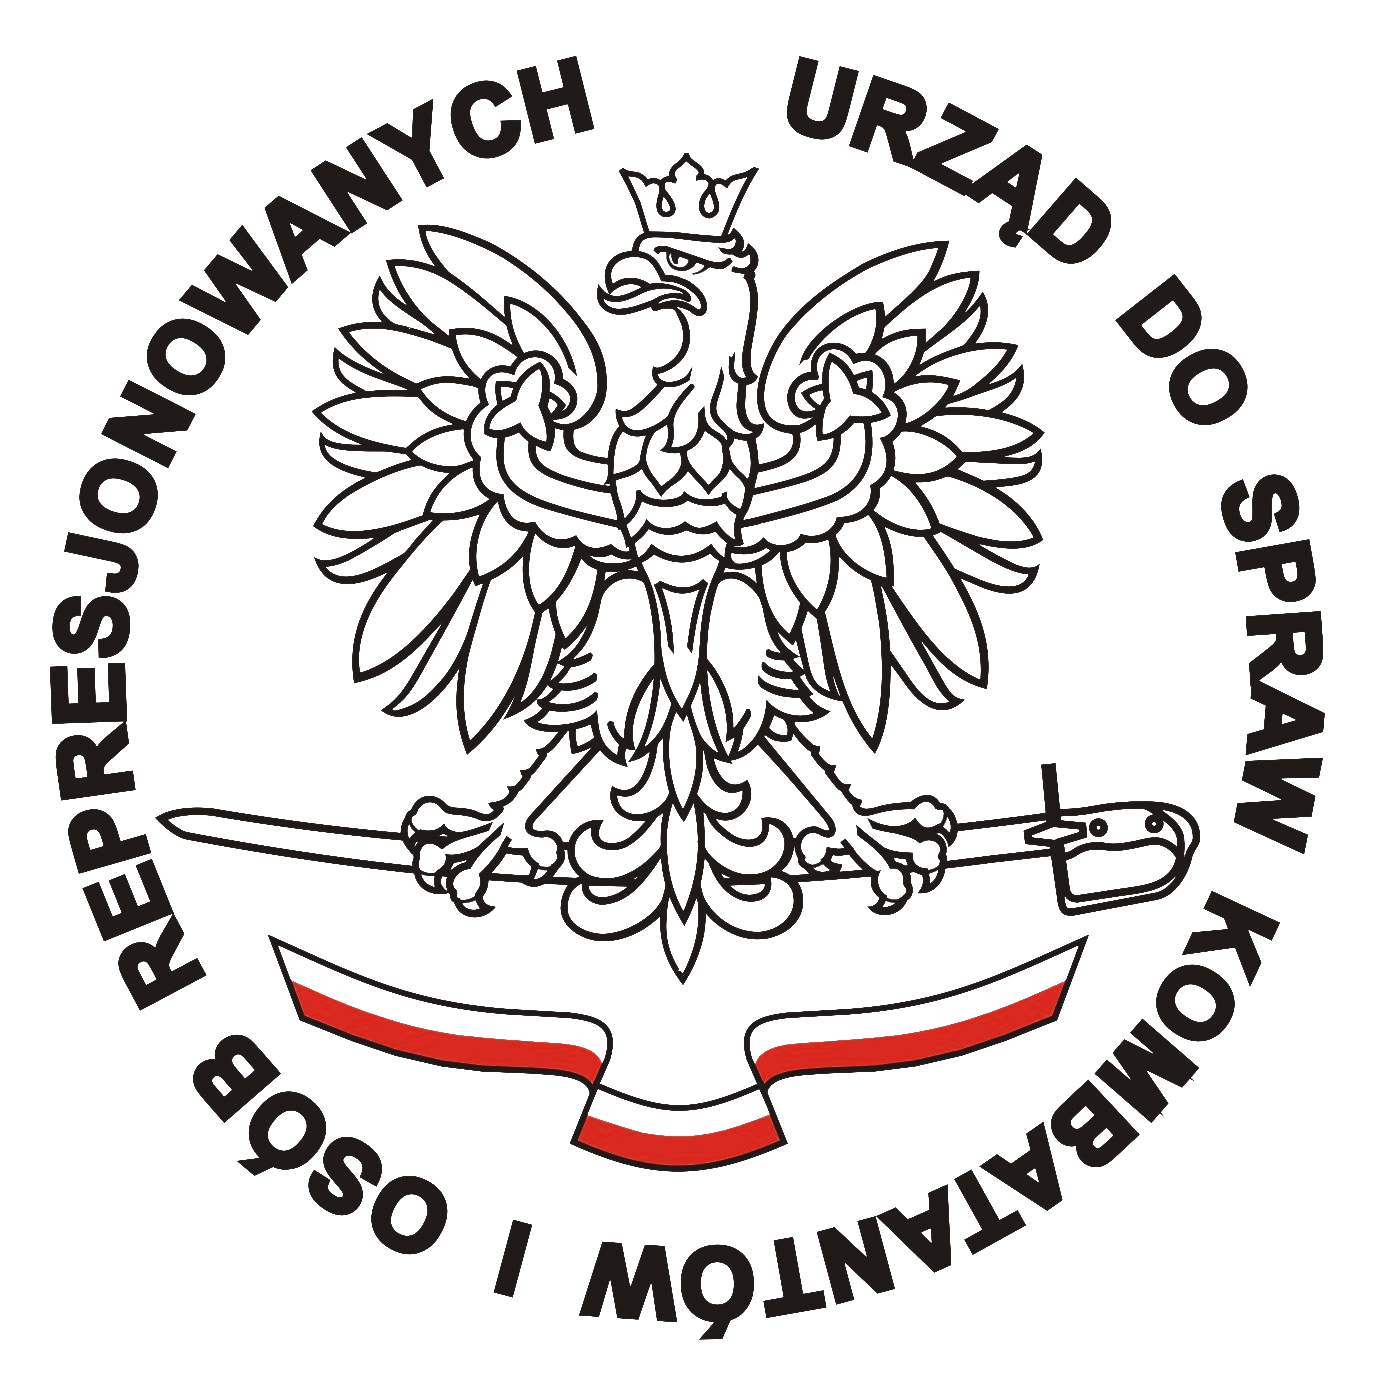 Marmed - Aparaty Słuchowe - Badanie Słuchu - Logo - Urząd do spraw kombatantów i osób represjonowanych